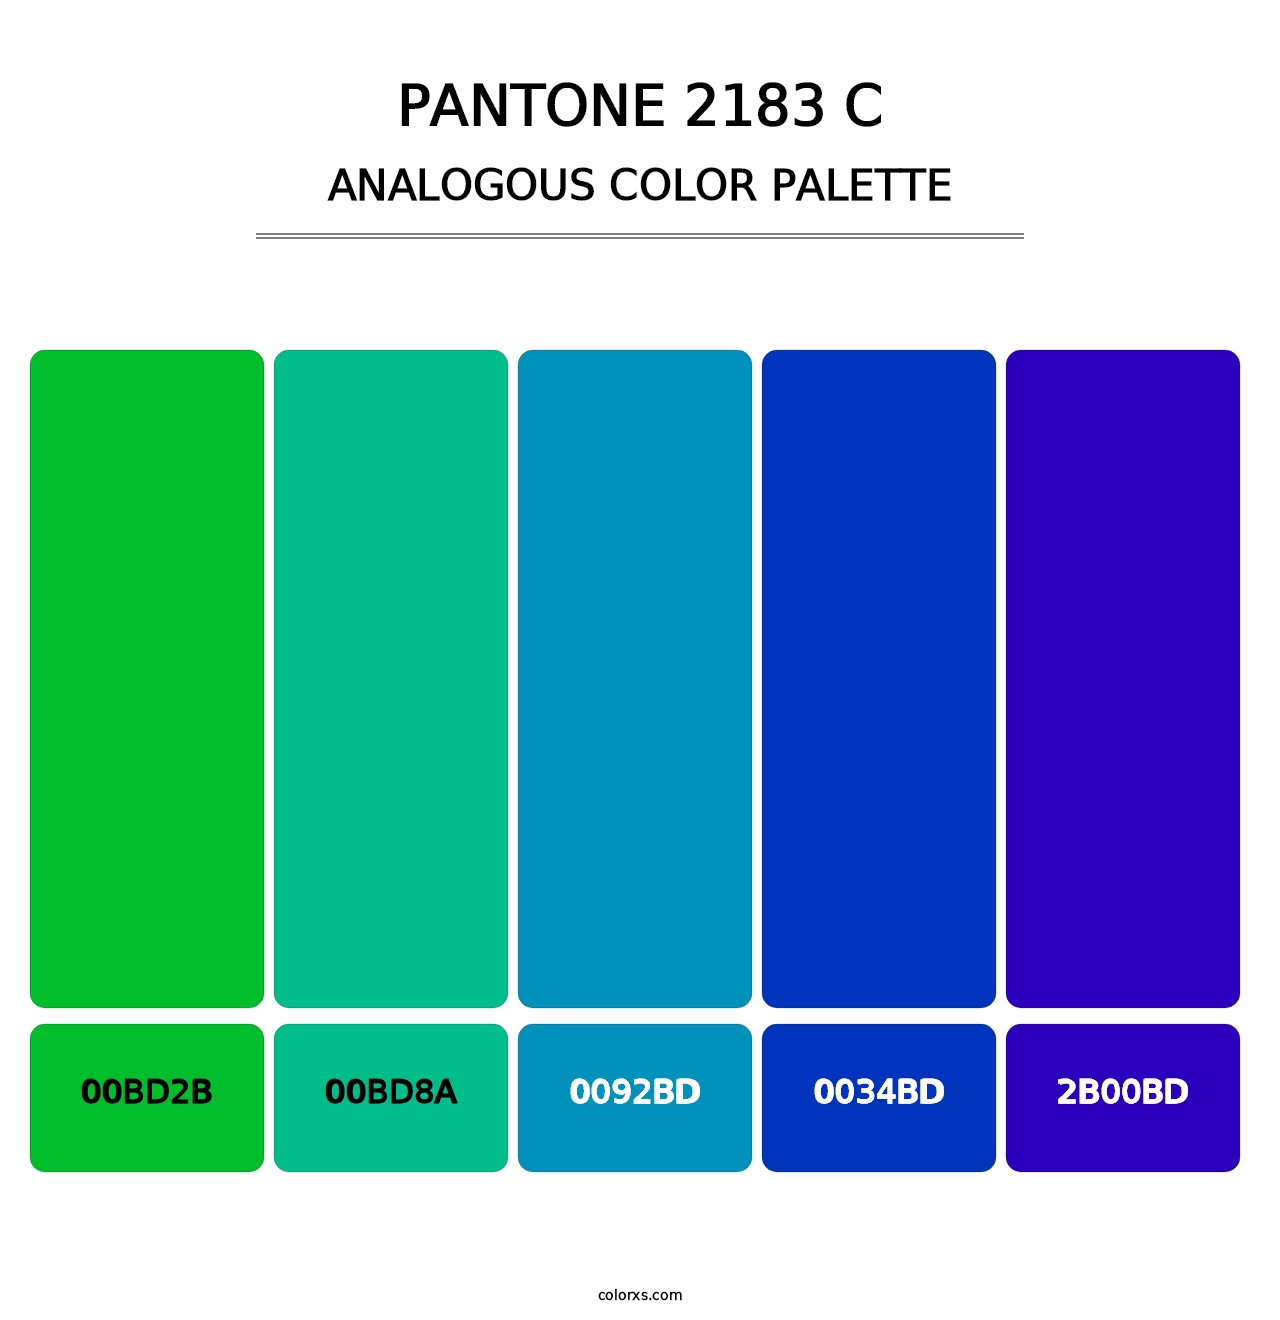 PANTONE 2183 C - Analogous Color Palette